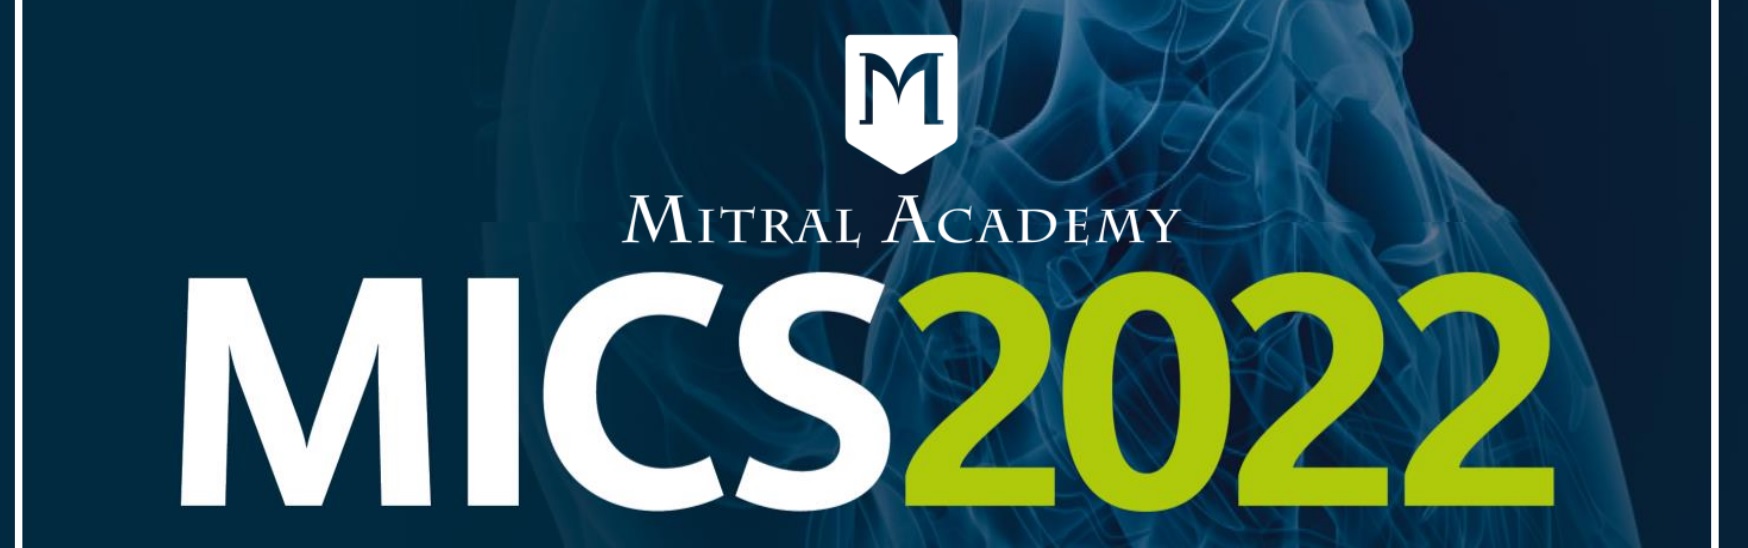 MICS 2022 - congresso internazionale dedicato alla cardiochirurgia mininvasiva